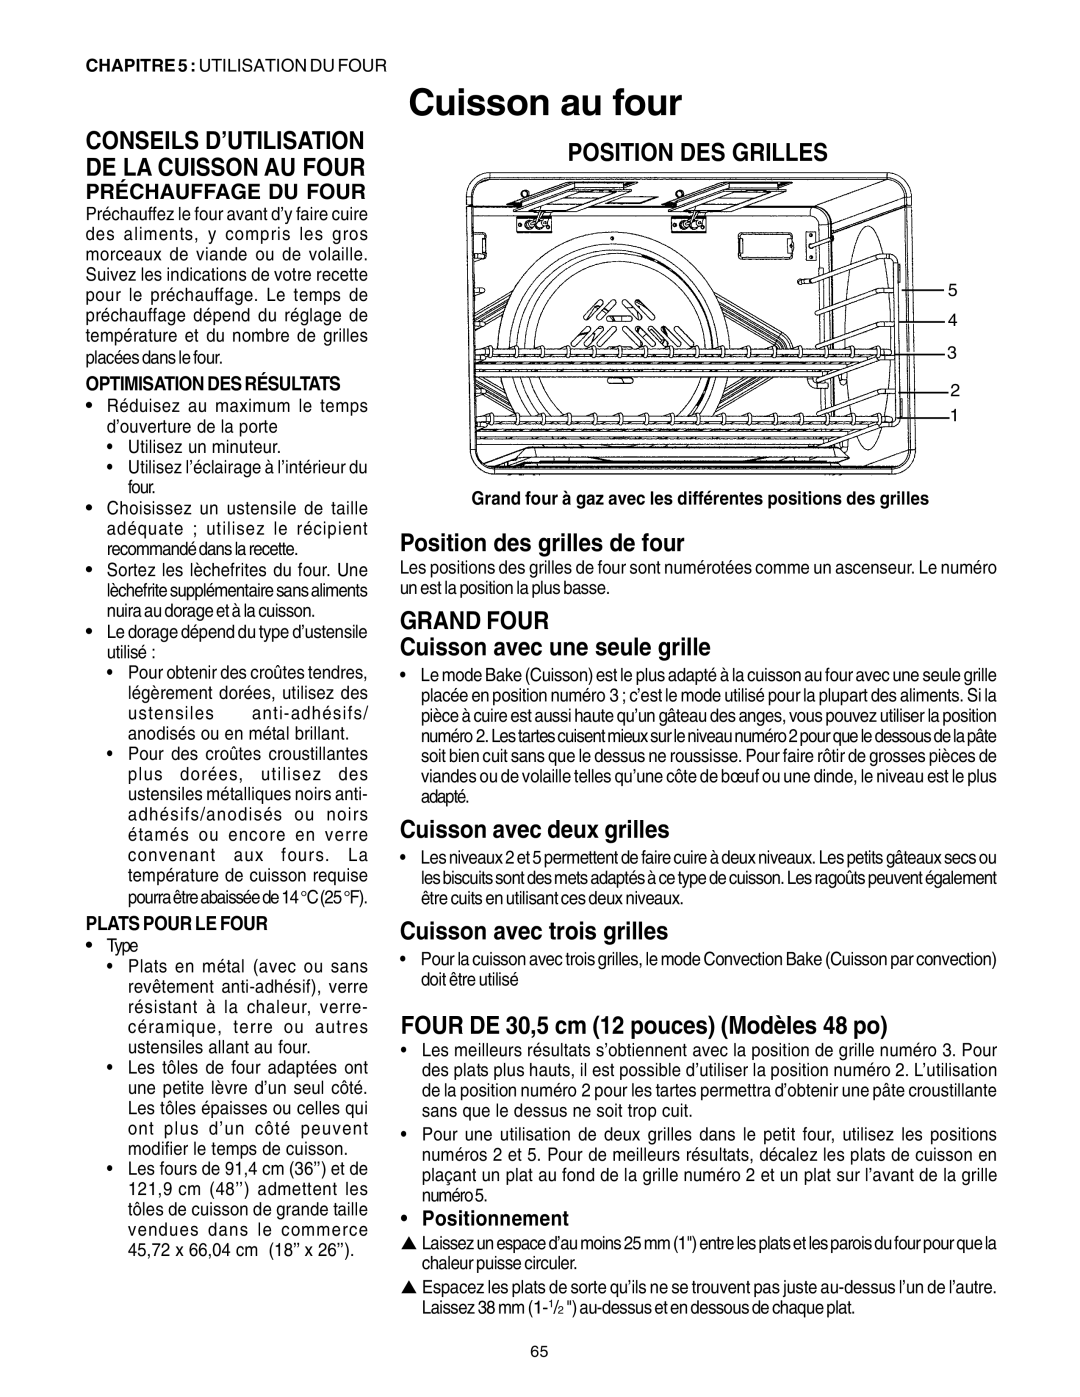 Thermador PRG36, PRG30 manual Cuisson au four, Position Des Grilles, Position des grilles de four, Cuisson avec deux grilles 